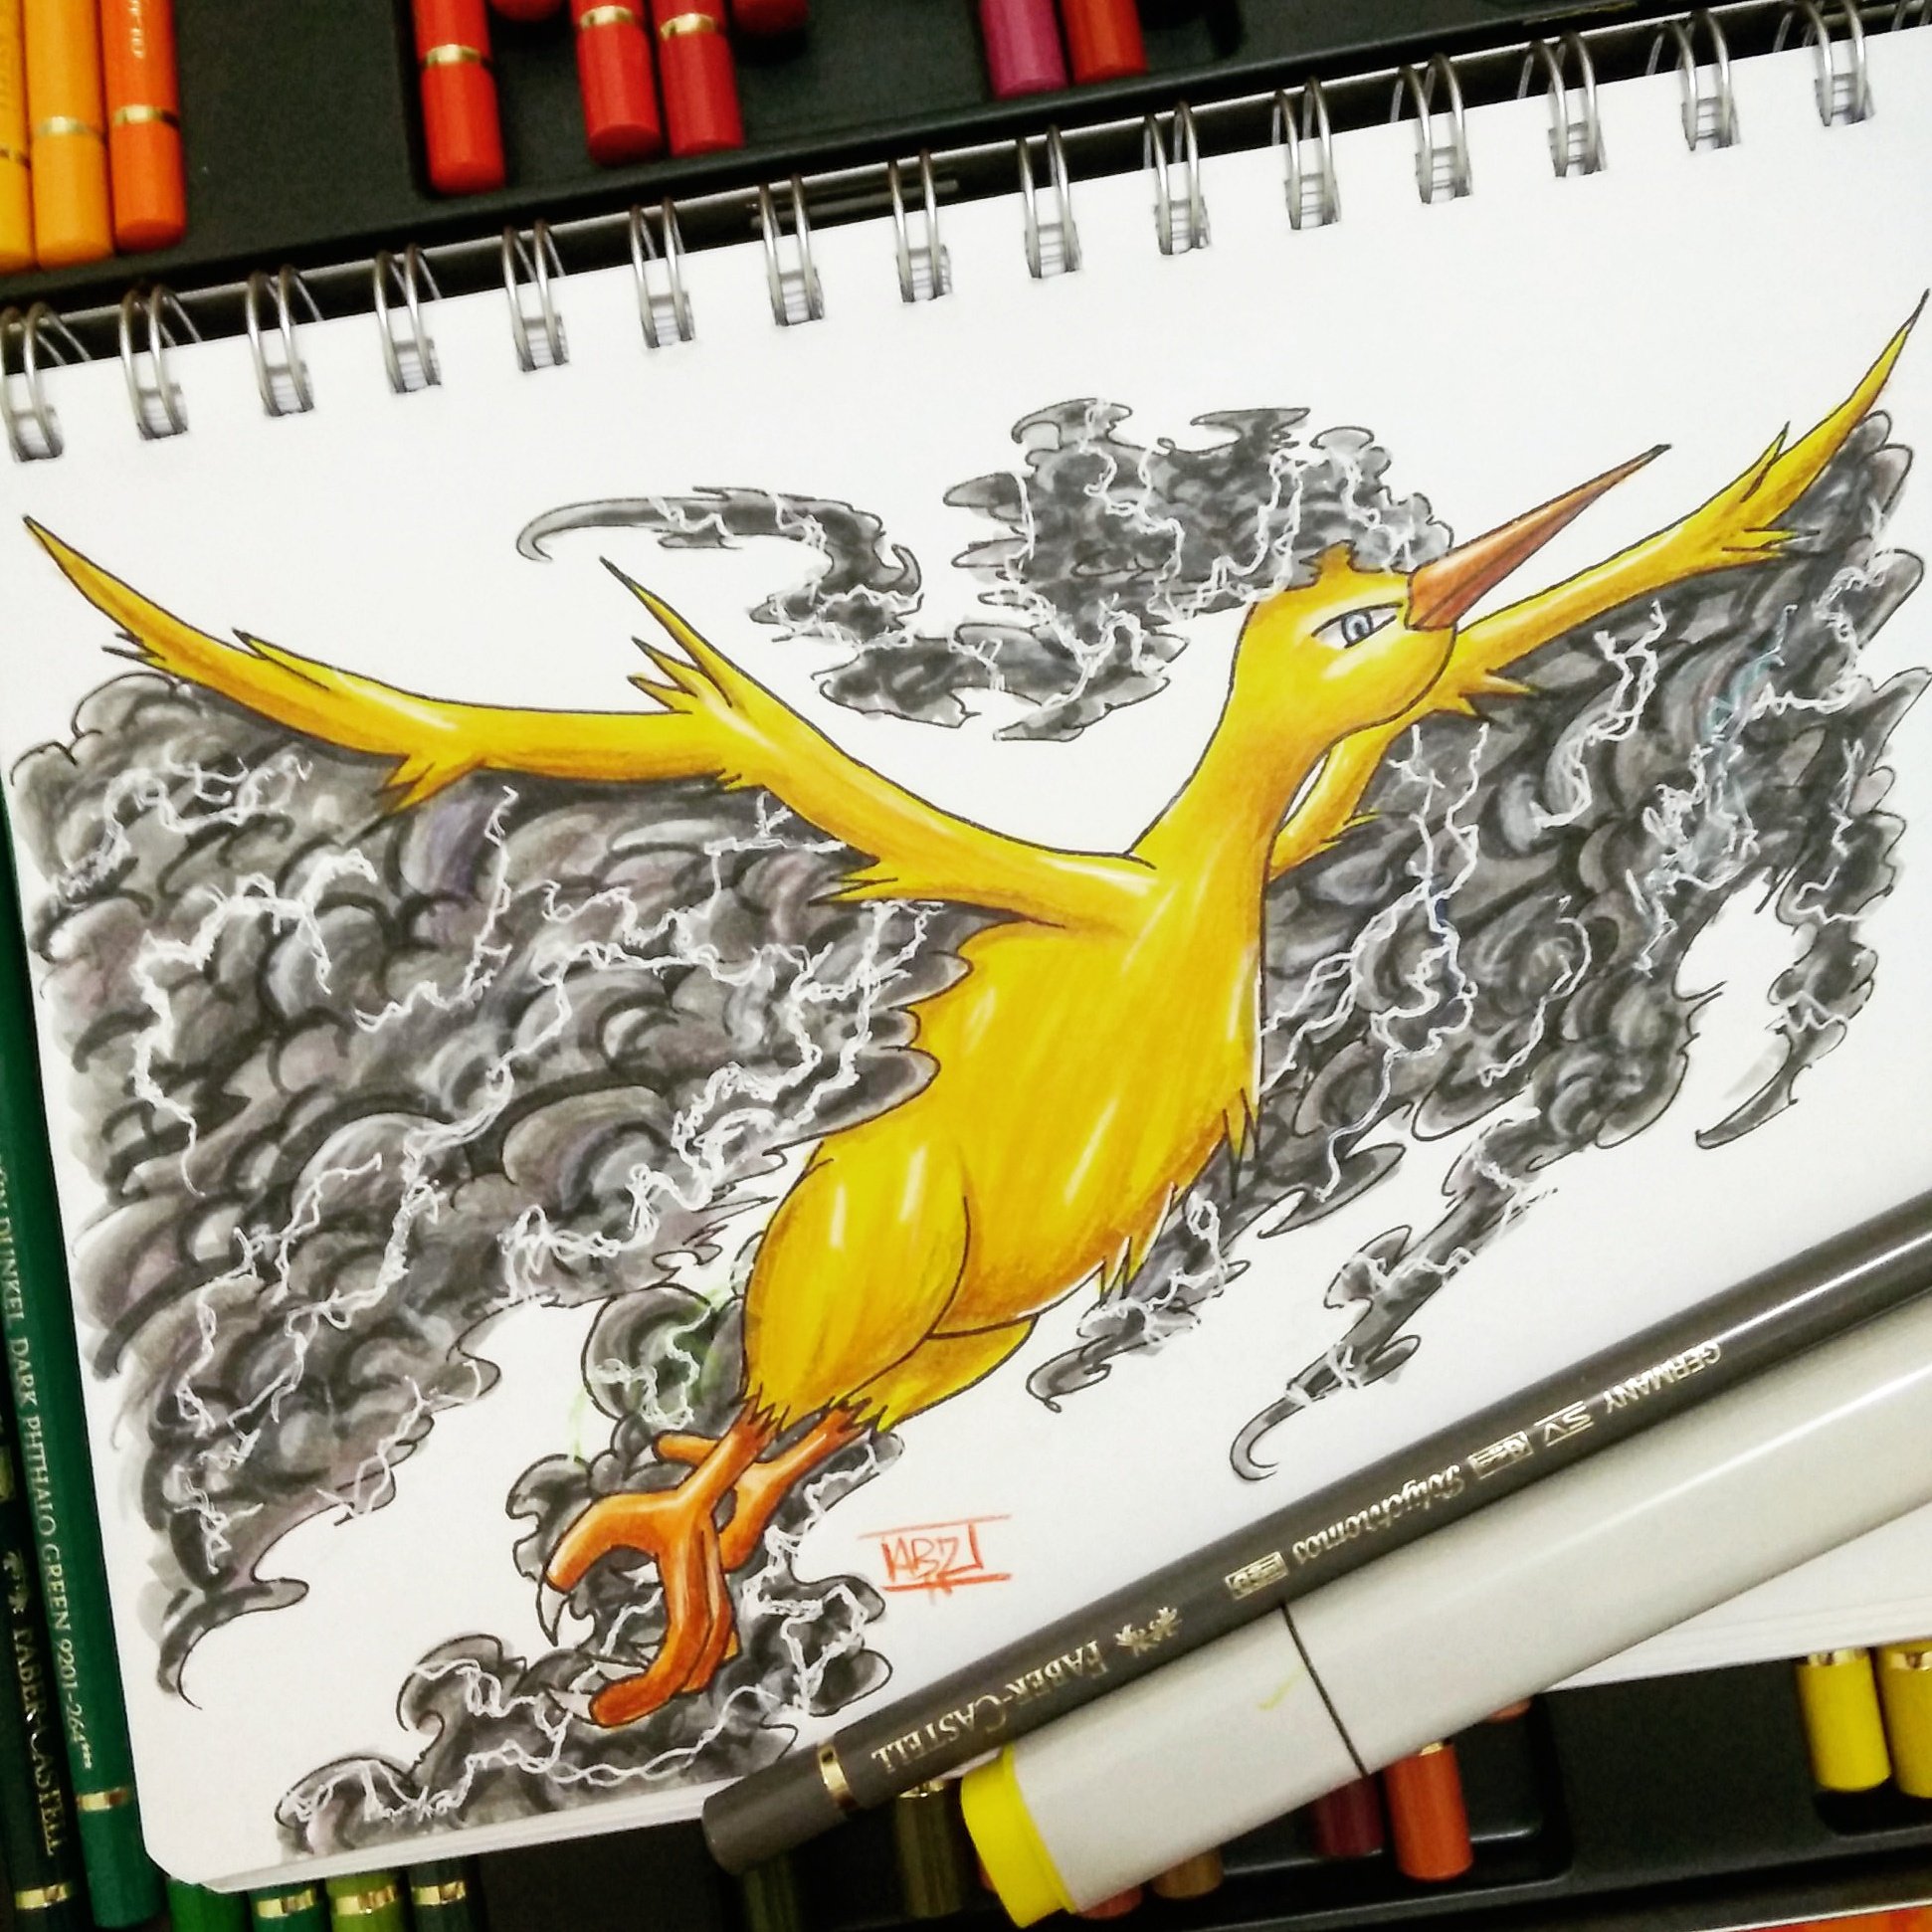 Artista inverte o traço de Pokémon e Digimon e cria novos monstrinhos em  ilustrações sensacionais